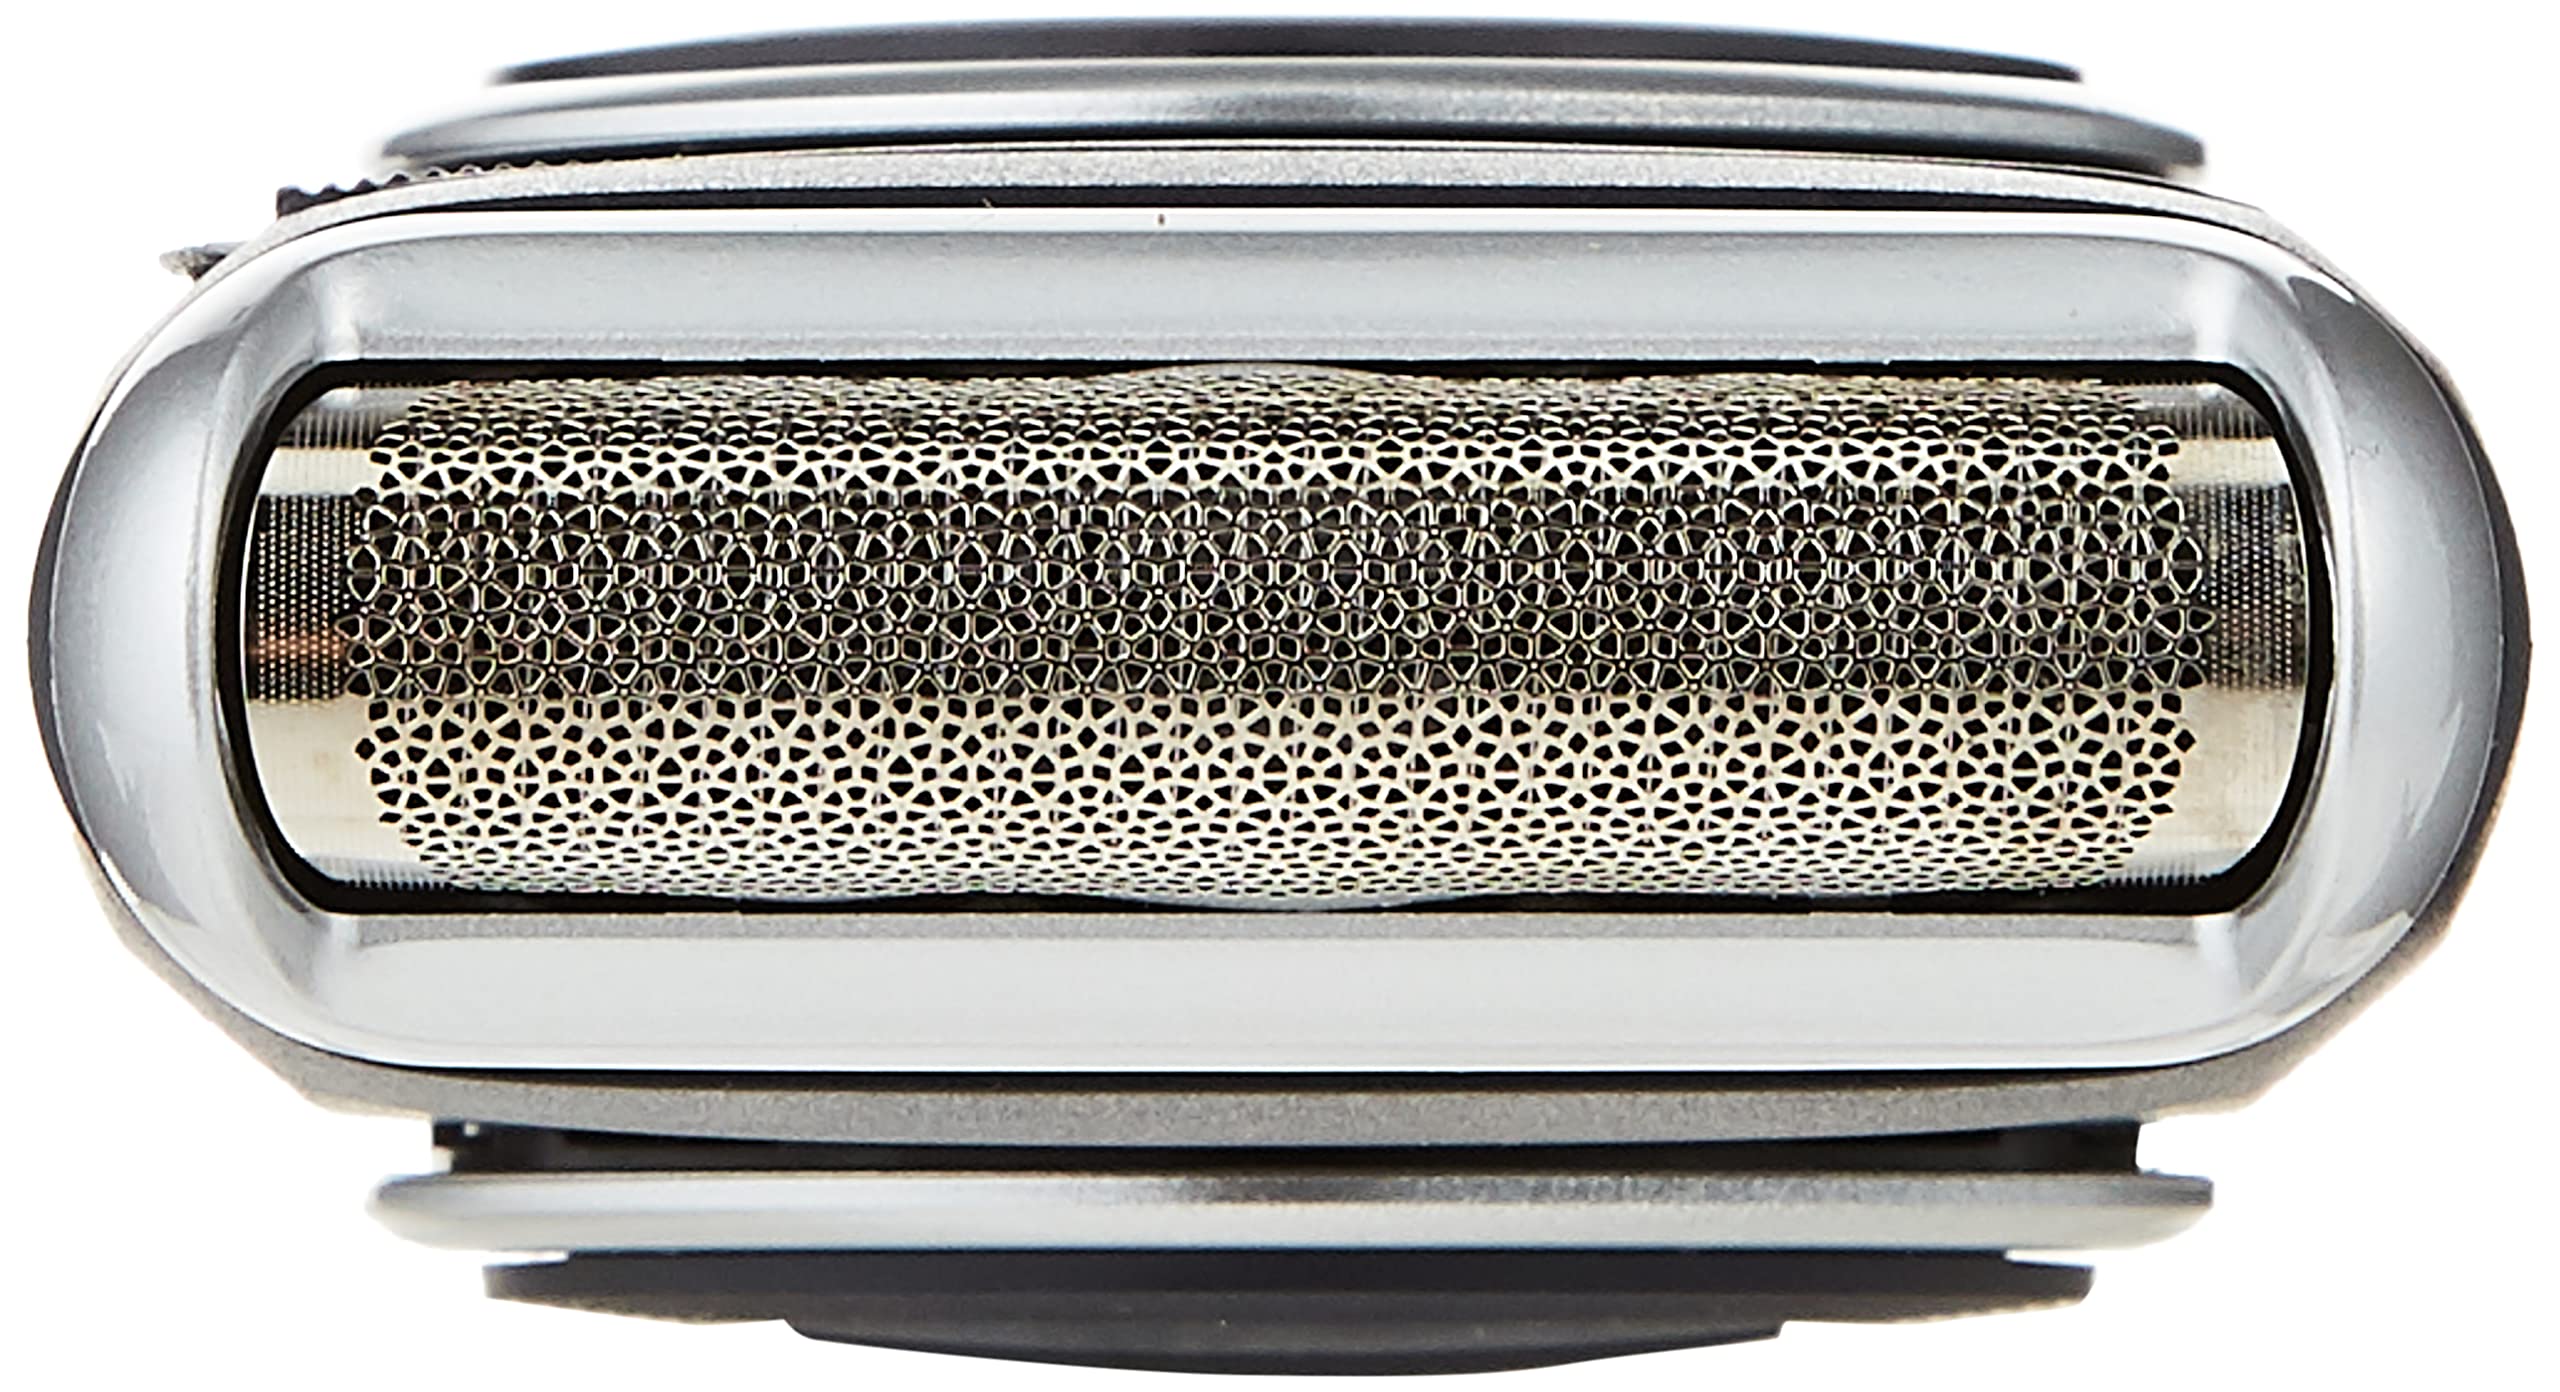 Braun MobileShave M-90 Travel Shaver Silver (Precision Trimmer, Smart Foil, Wide Floating Foil, Washable)